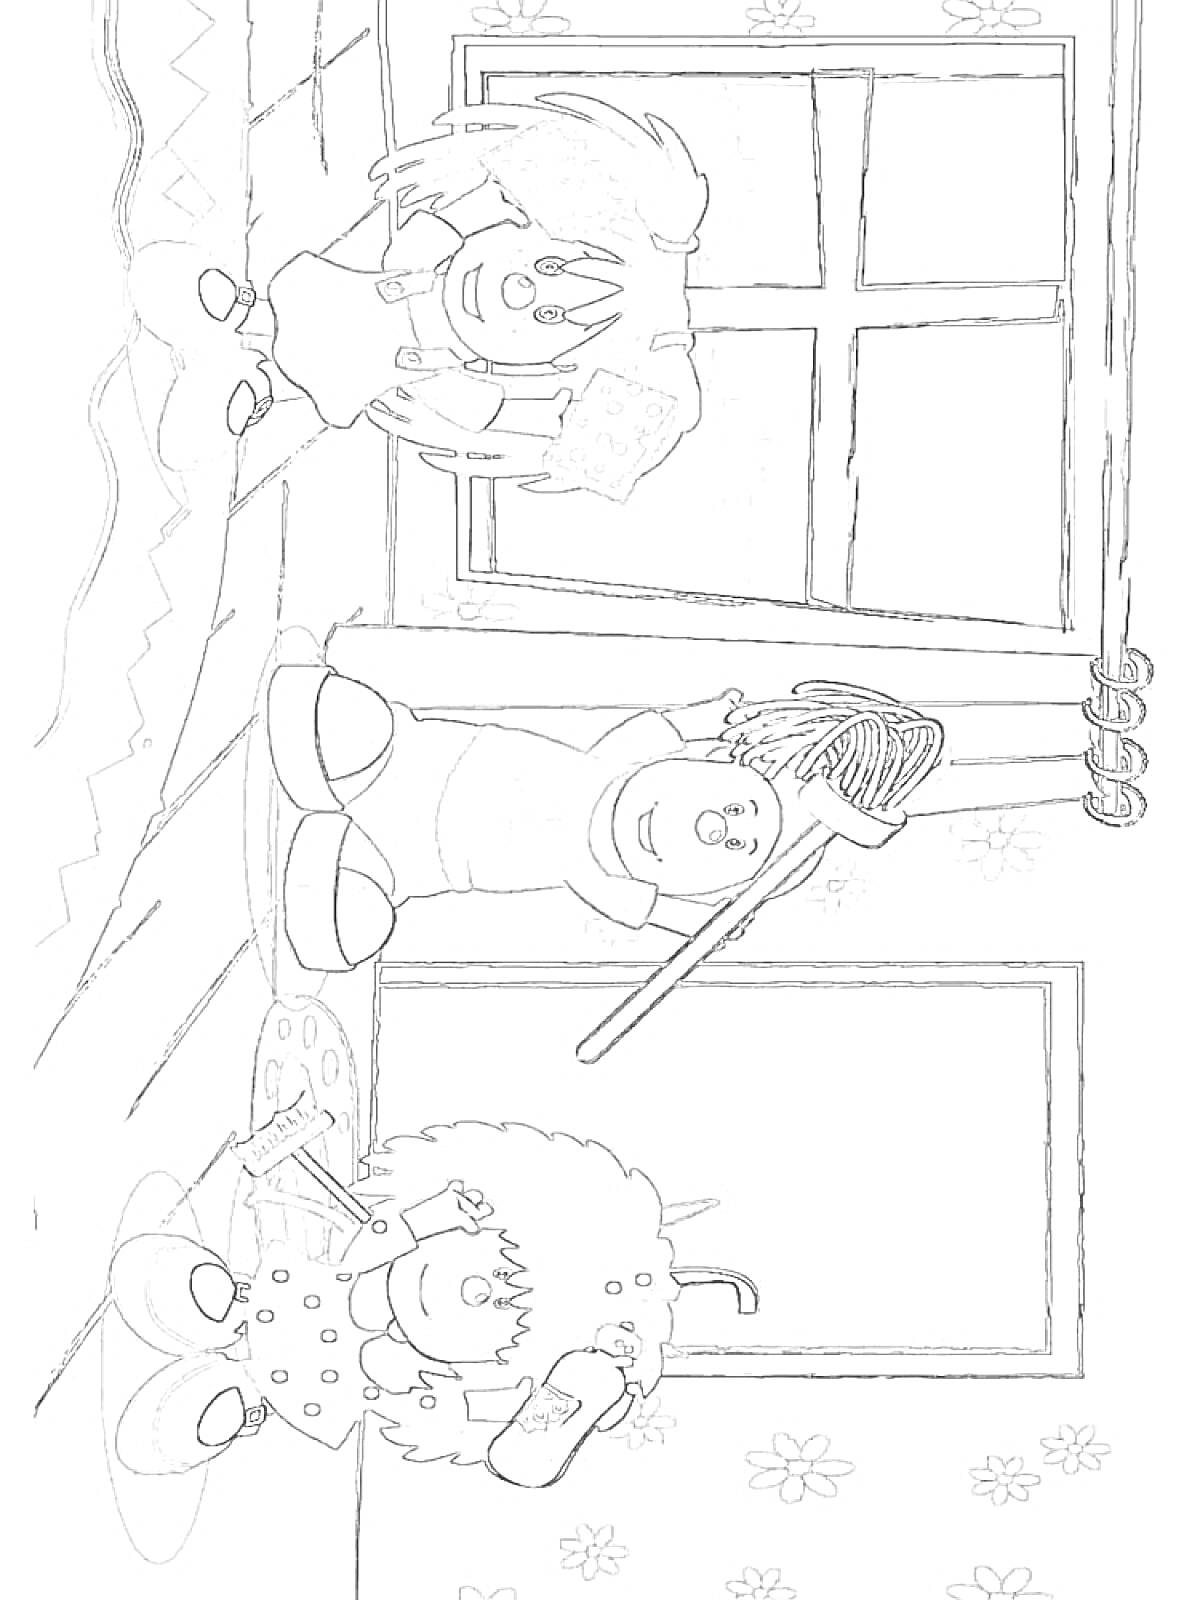 Барбарики в комнате с окном, девочка с феном и расческой, мальчик на полу с кисточкой, ребенок с метелкой и ведром.